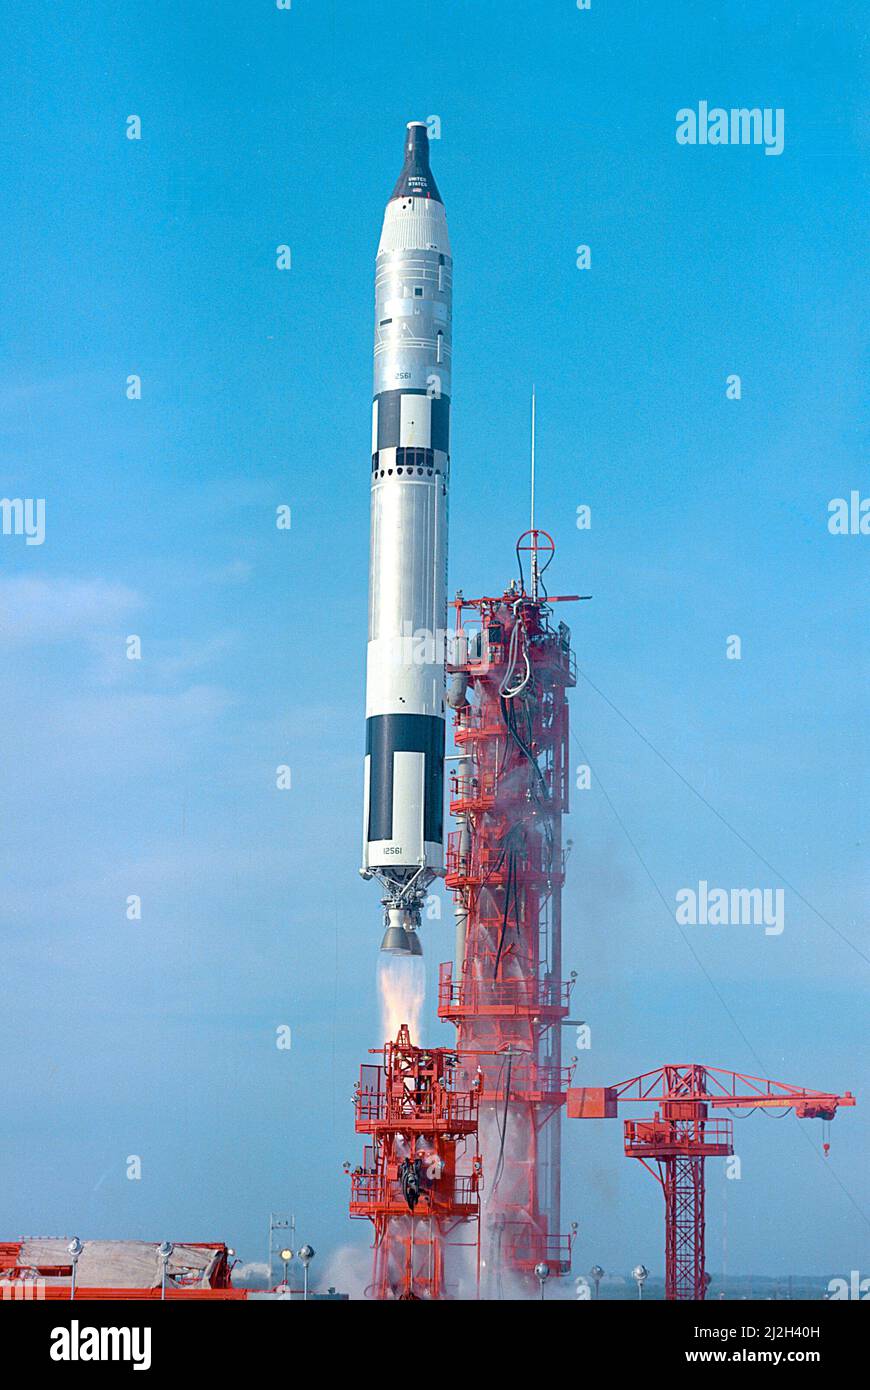 Le Gemini VI a été lancé le 15 décembre 1965 à partir du Pad 19. Il a été piloté par les astronautes Walter Schirra et Thomas P. Stafford. Gemini VI a été réveillée par Gemini VII, déjà en orbite autour de la Terre. Banque D'Images